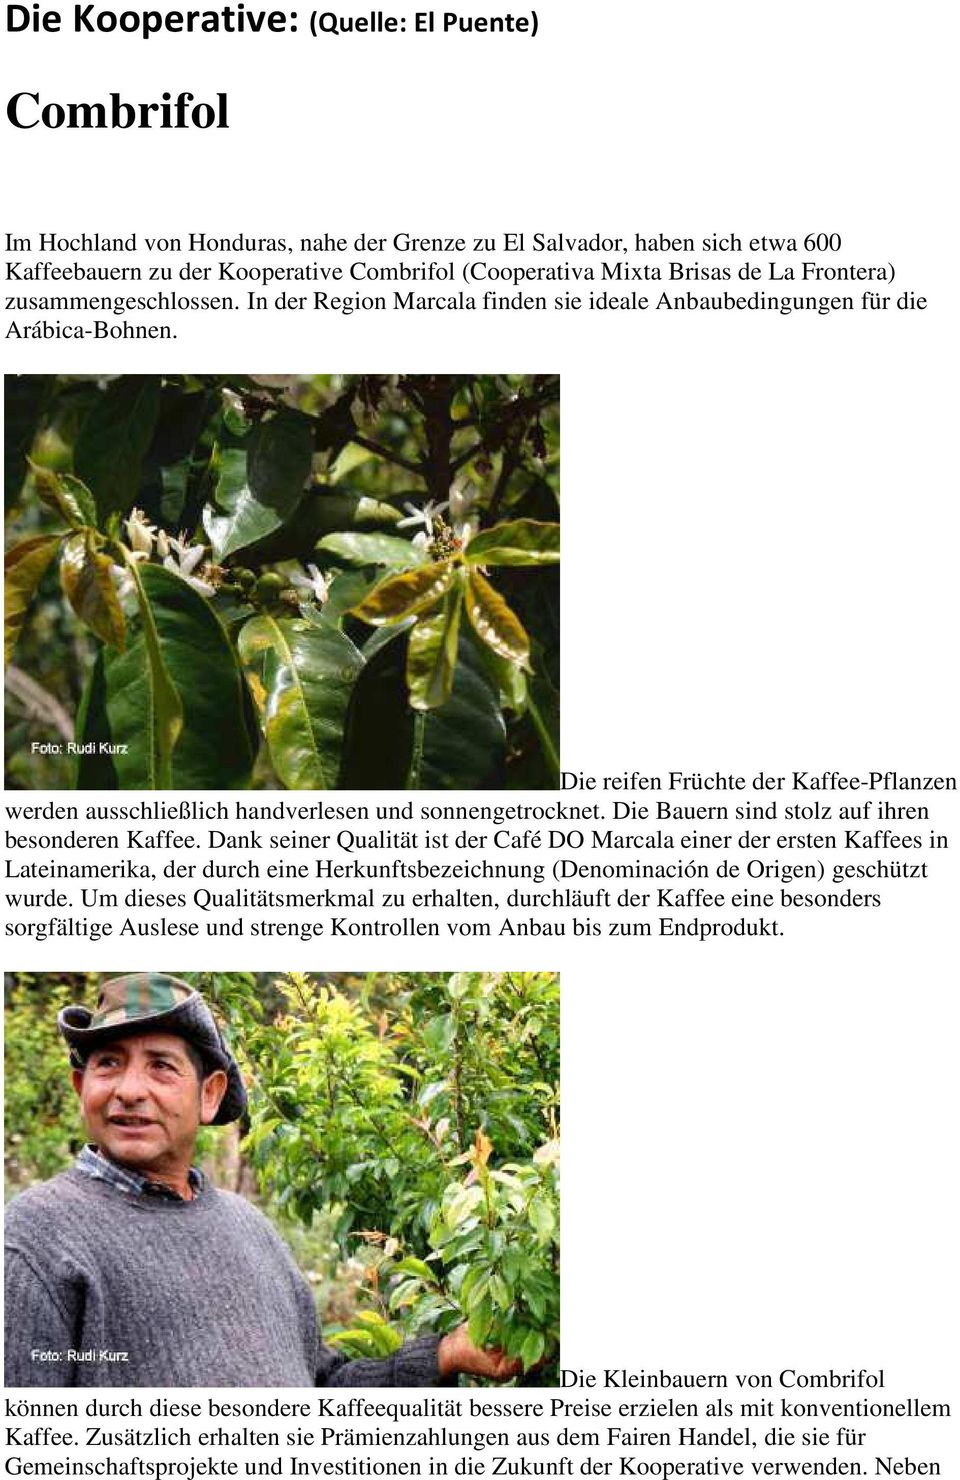 Die reifen Früchte der Kaffee-Pflanzen werden ausschließlich handverlesen und sonnengetrocknet. Die Bauern sind stolz auf ihren besonderen Kaffee.